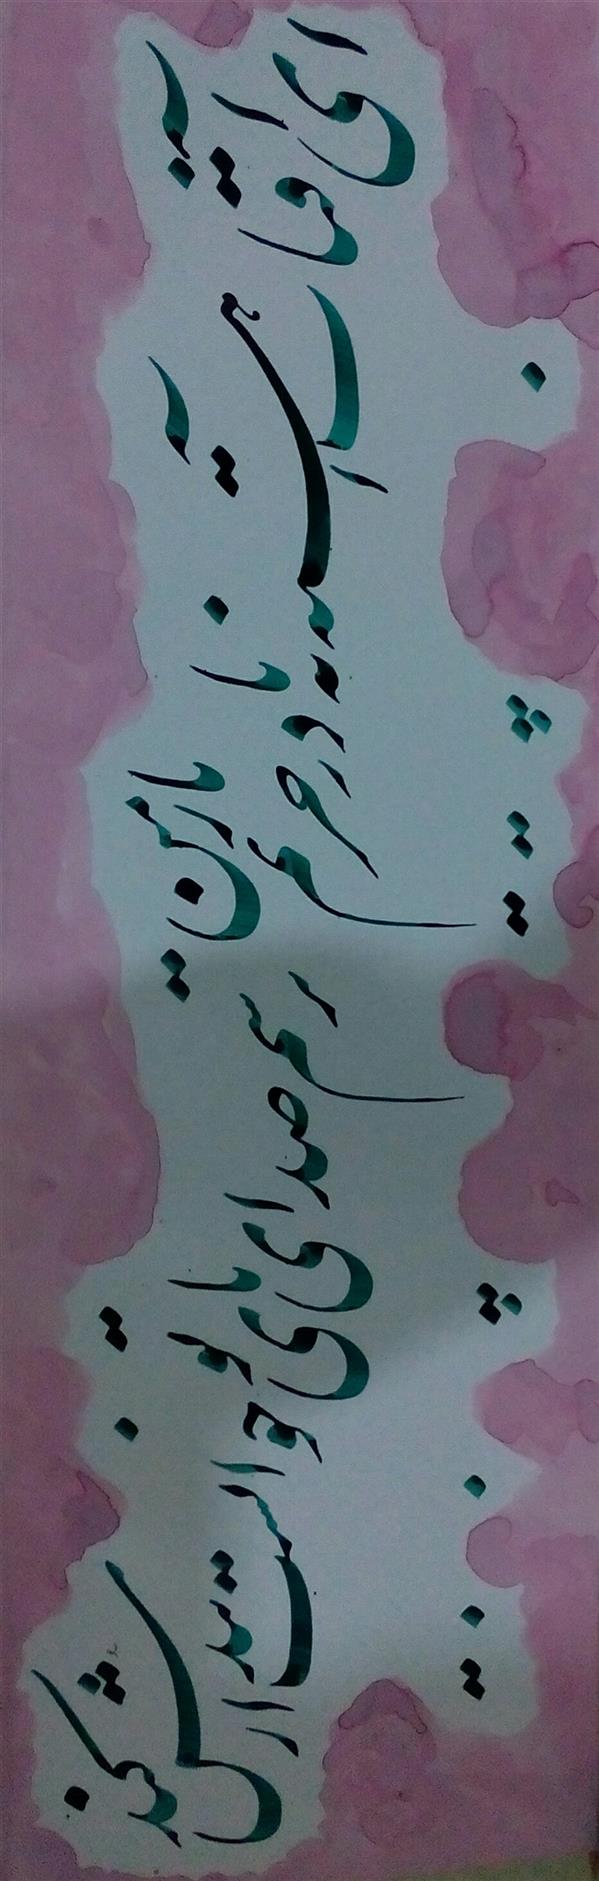 هنر خوشنویسی محفل خوشنویسی عبدالله جعفری ابعاد بدون قاب 16*46 cm